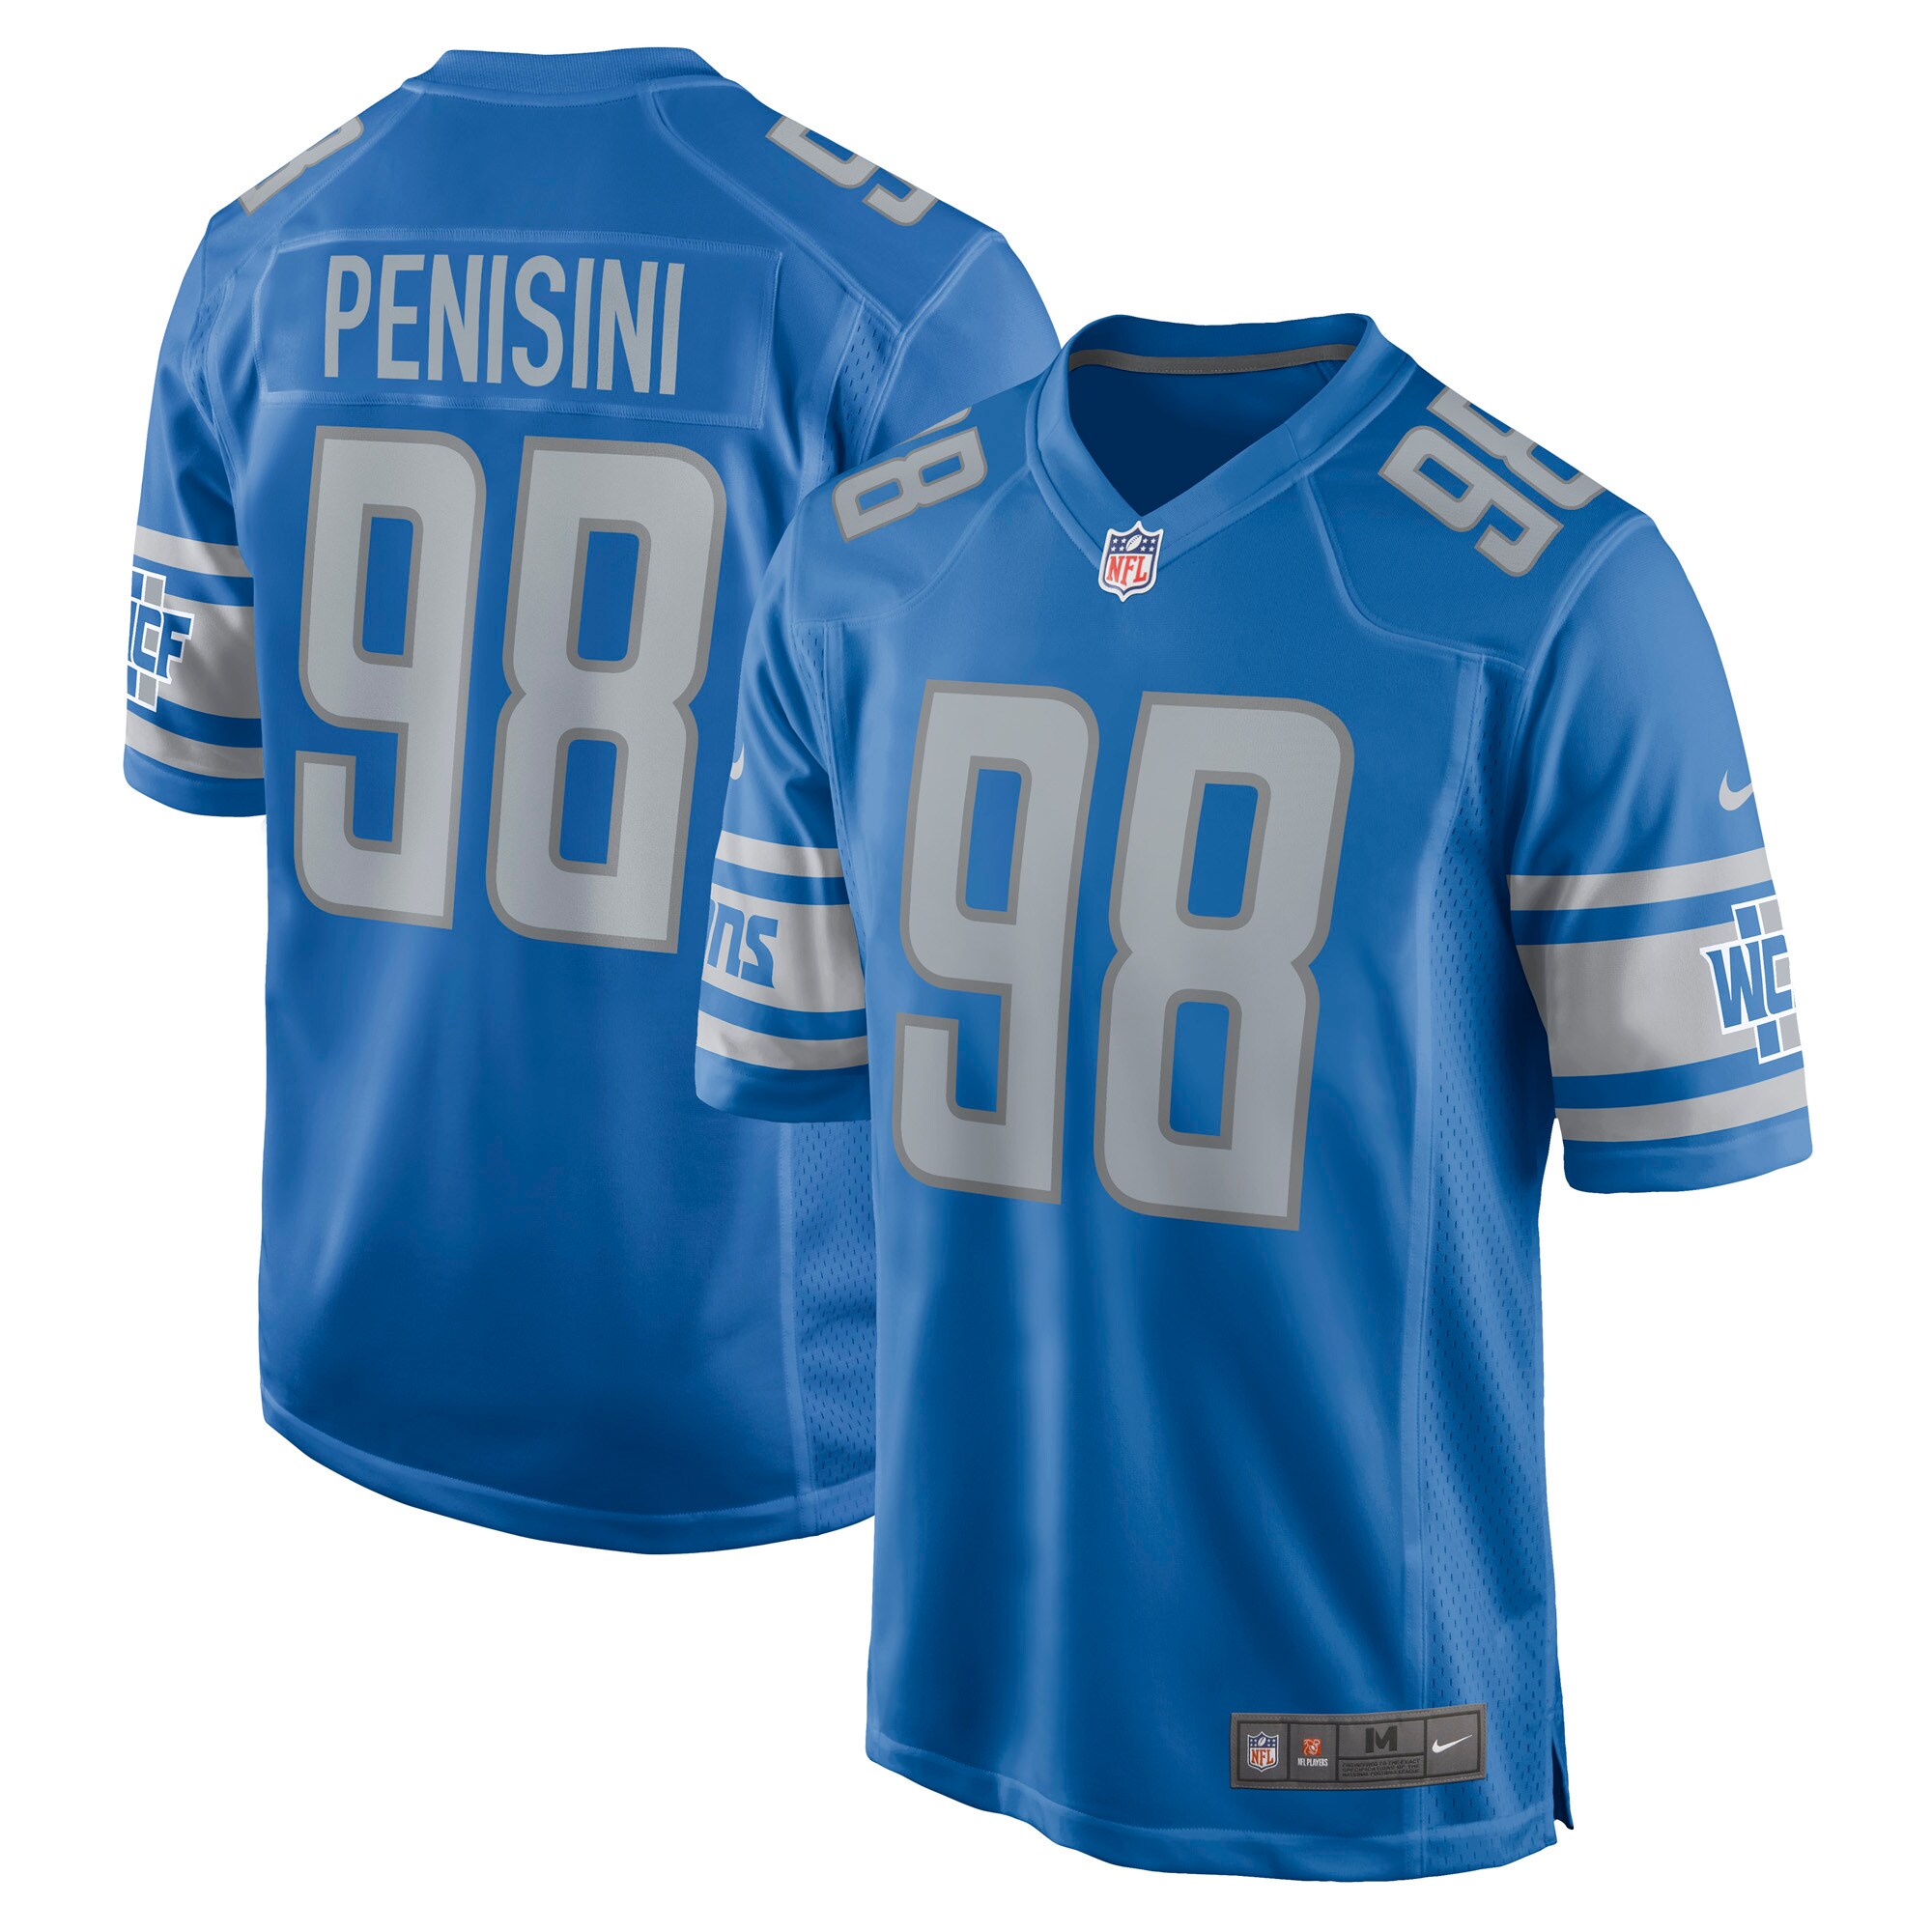 Men's Detroit Lions John Penisini Nike Blue Game Player Jersey